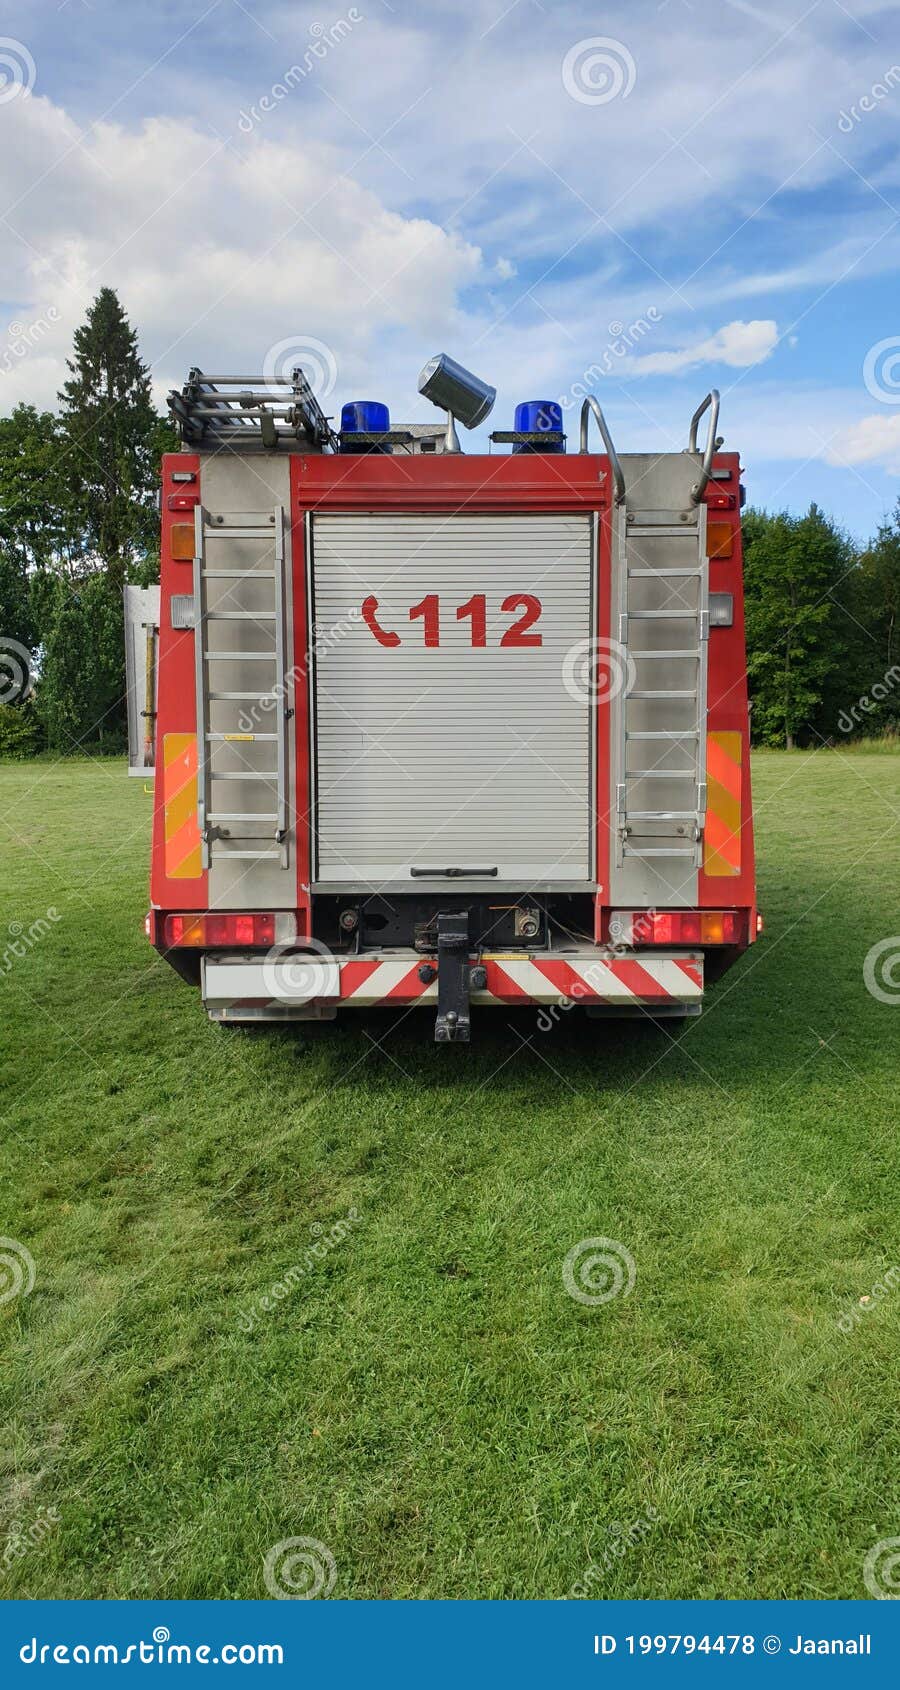 Camión spannbettlaken 911 emergencia coche de bomberos 